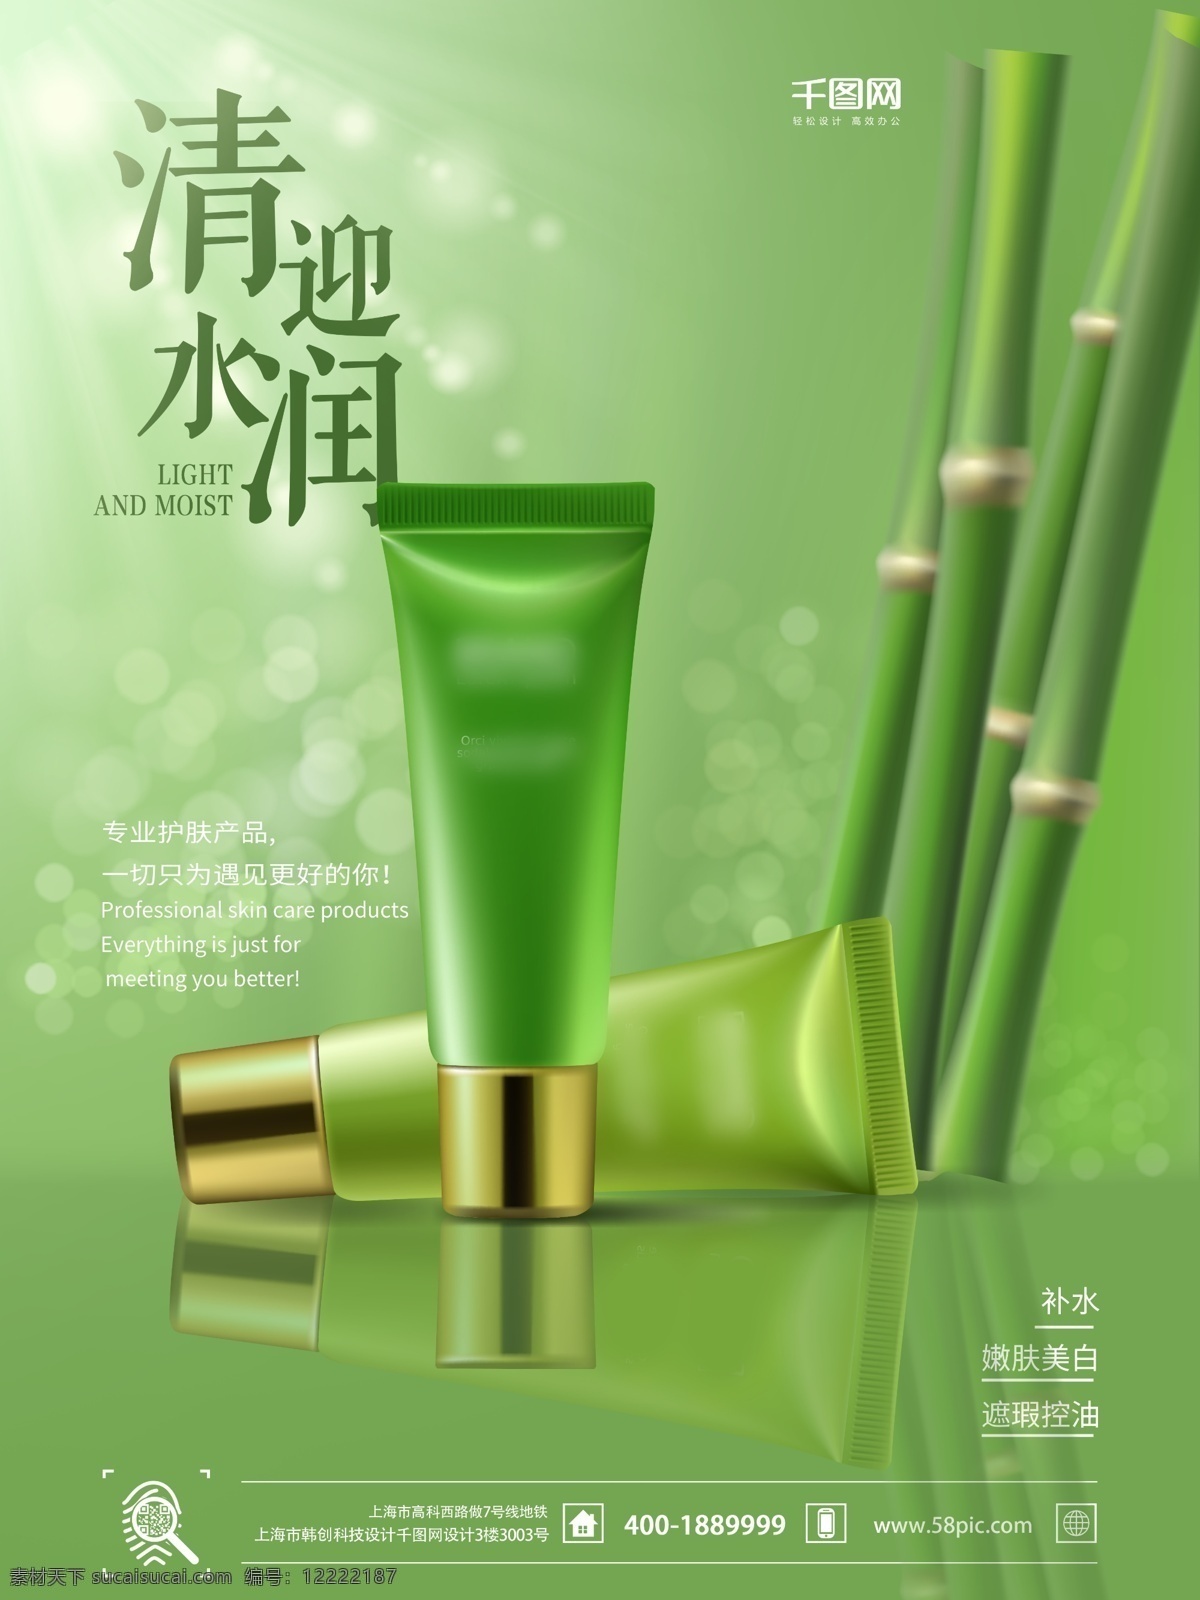 化妆品 宣传海报 时尚 绿色 时尚化妆品 纯天然化妆品 竹子 水润美白 护肤品 化妆品促销